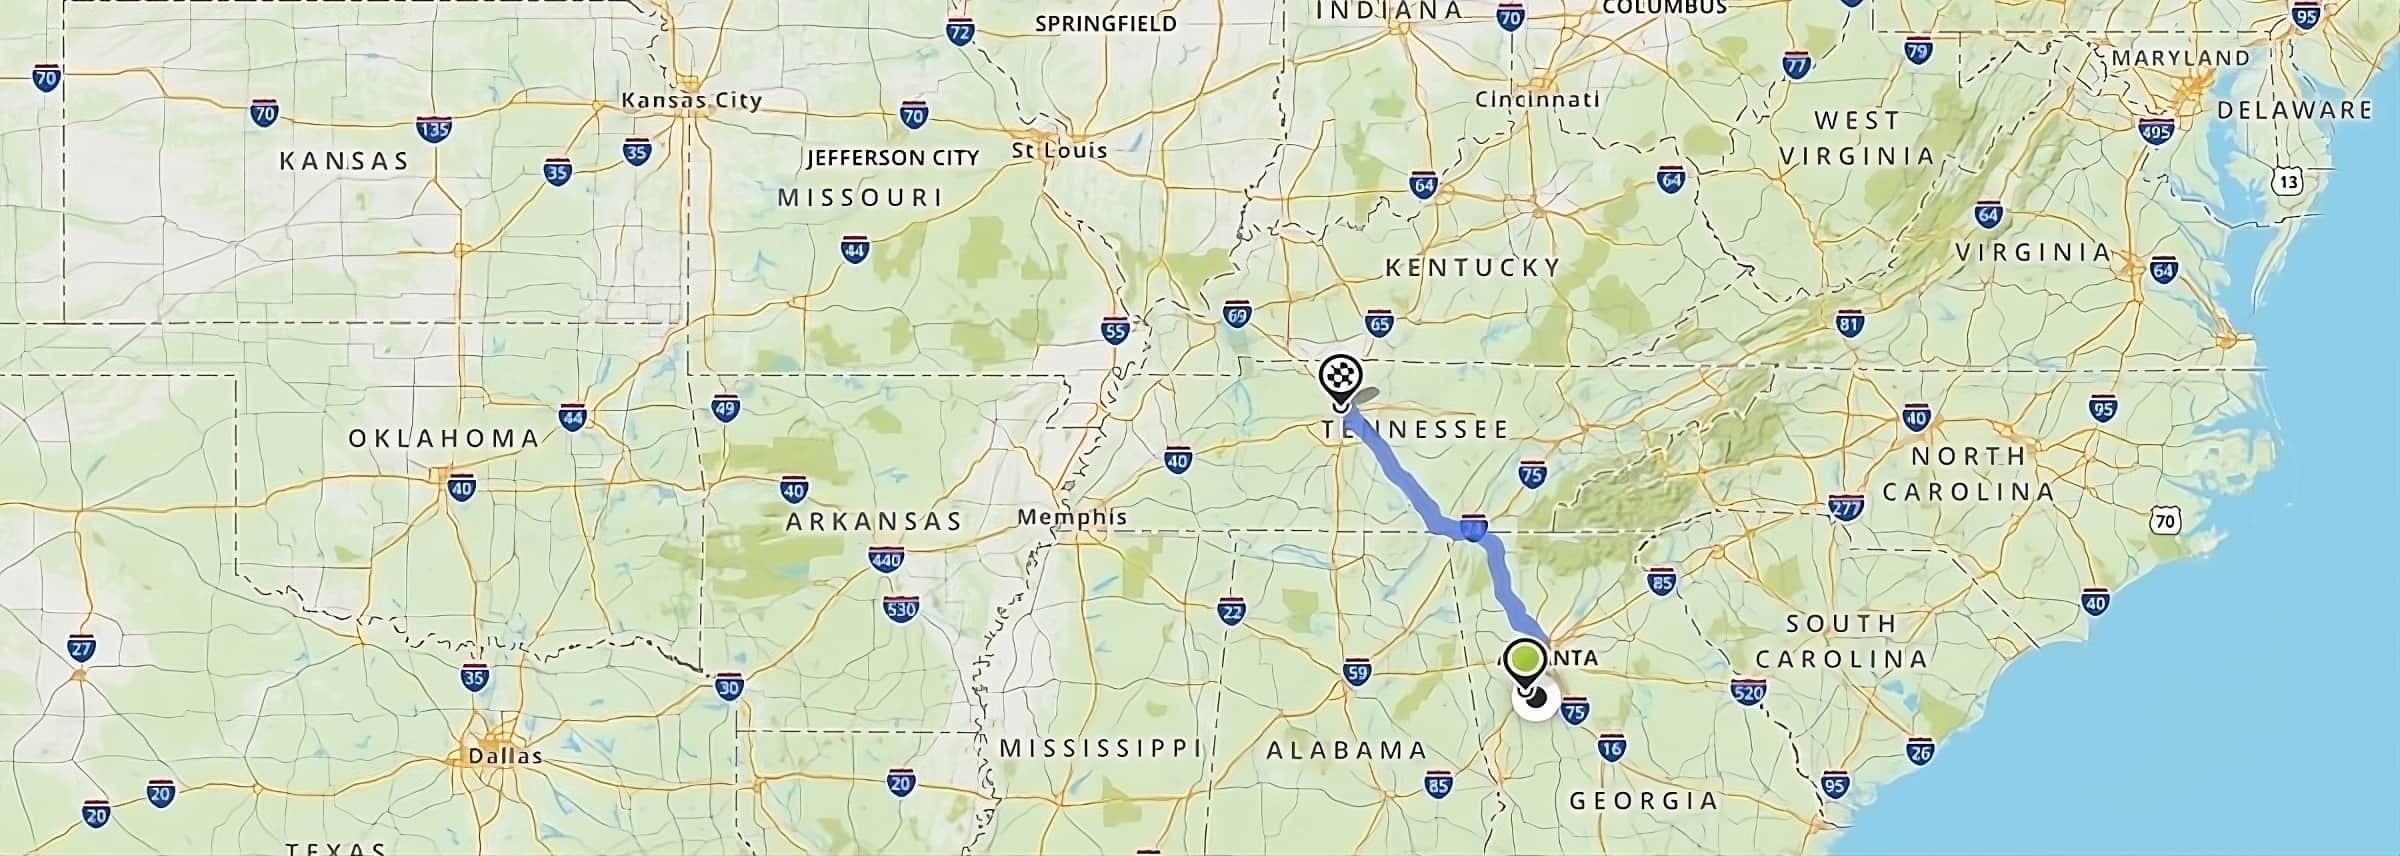 mapa podróż przez stany USA trasa Atlanta-Nashville stany Georgia, Alabama, Tennessee